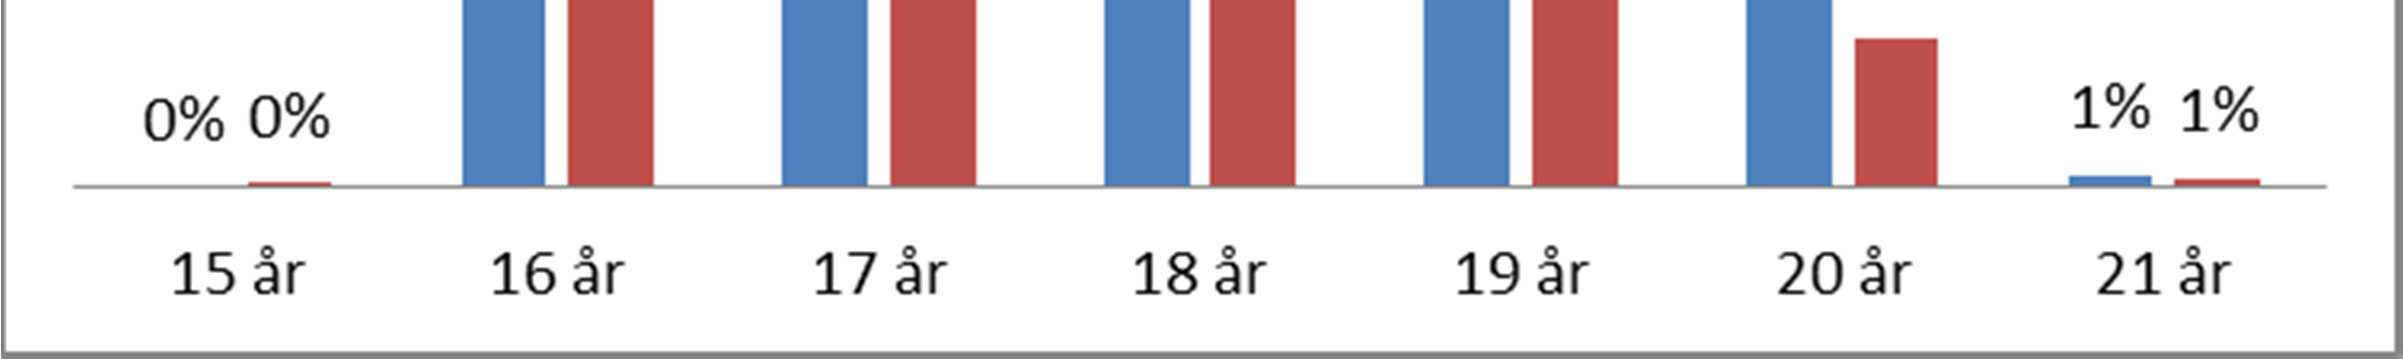 Figur 2 Sysselsättning grupperad utifrån procent. Se färgkodning figur 1.